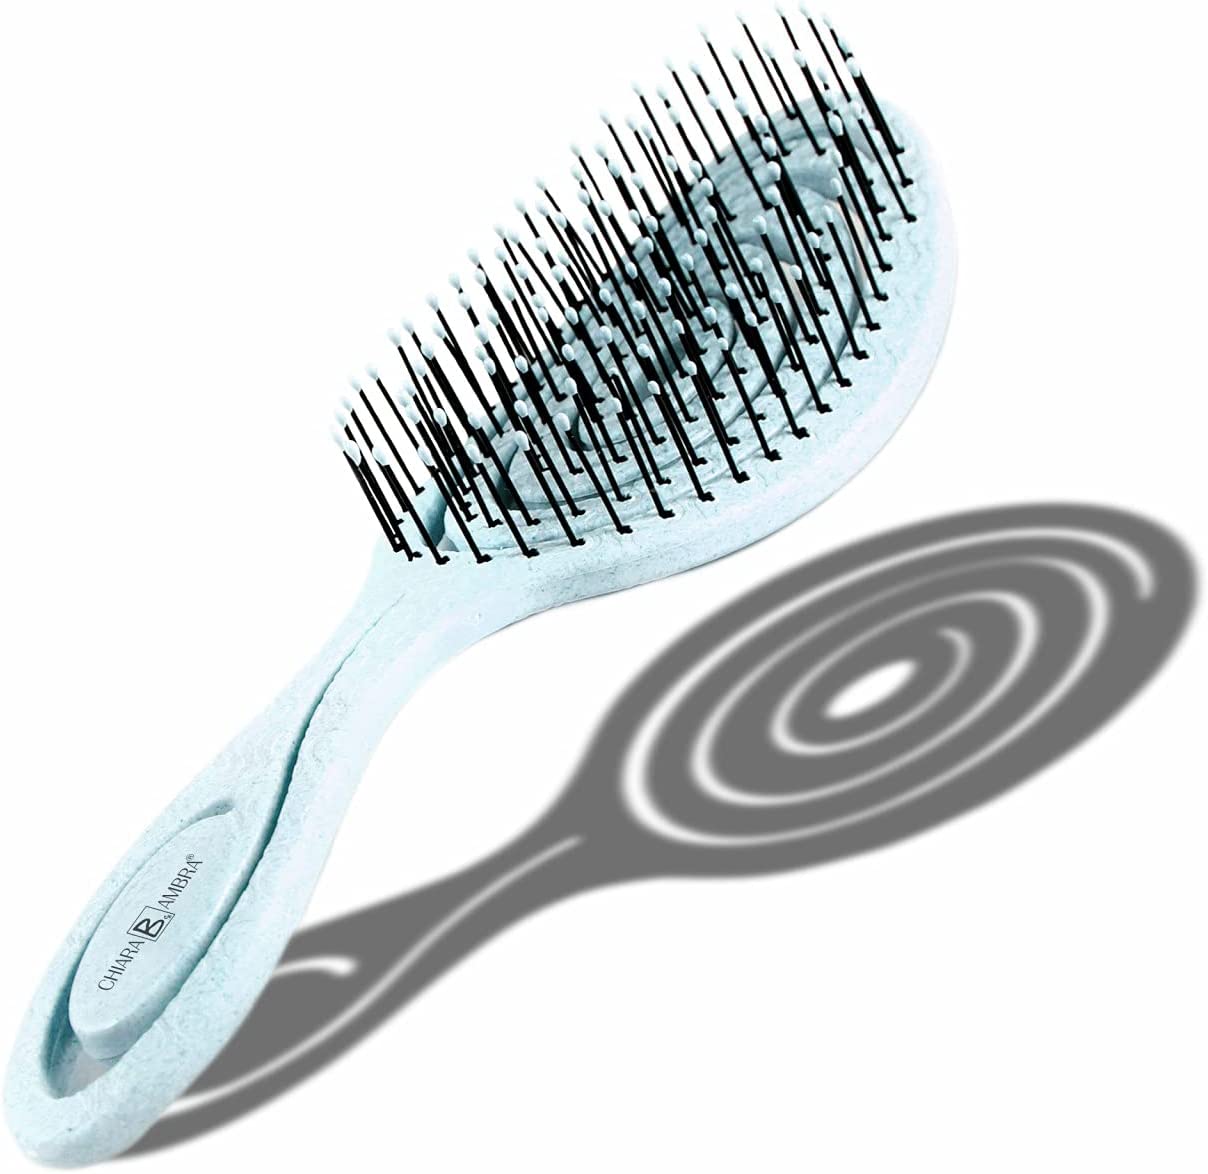 
                                    
                                Spazzole per capelli, come sceglierle a seconda della chioma, esigenza e situazione